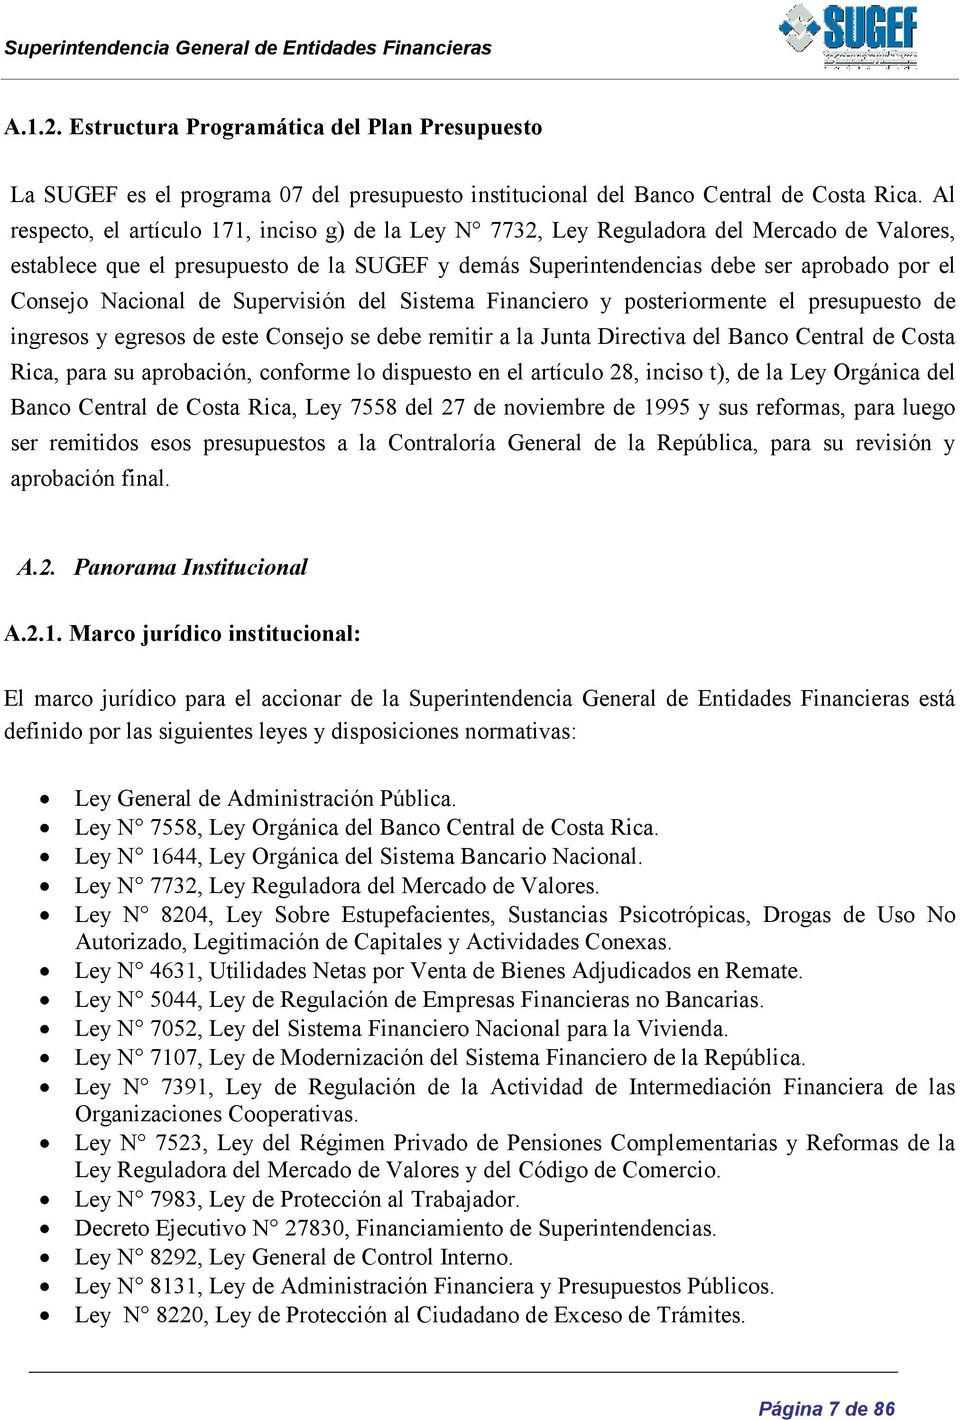 Nacional de Supervisión del Sistema Financiero y posteriormente el presupuesto de ingresos y egresos de este Consejo se debe remitir a la Junta Directiva del Banco Central de Costa Rica, para su